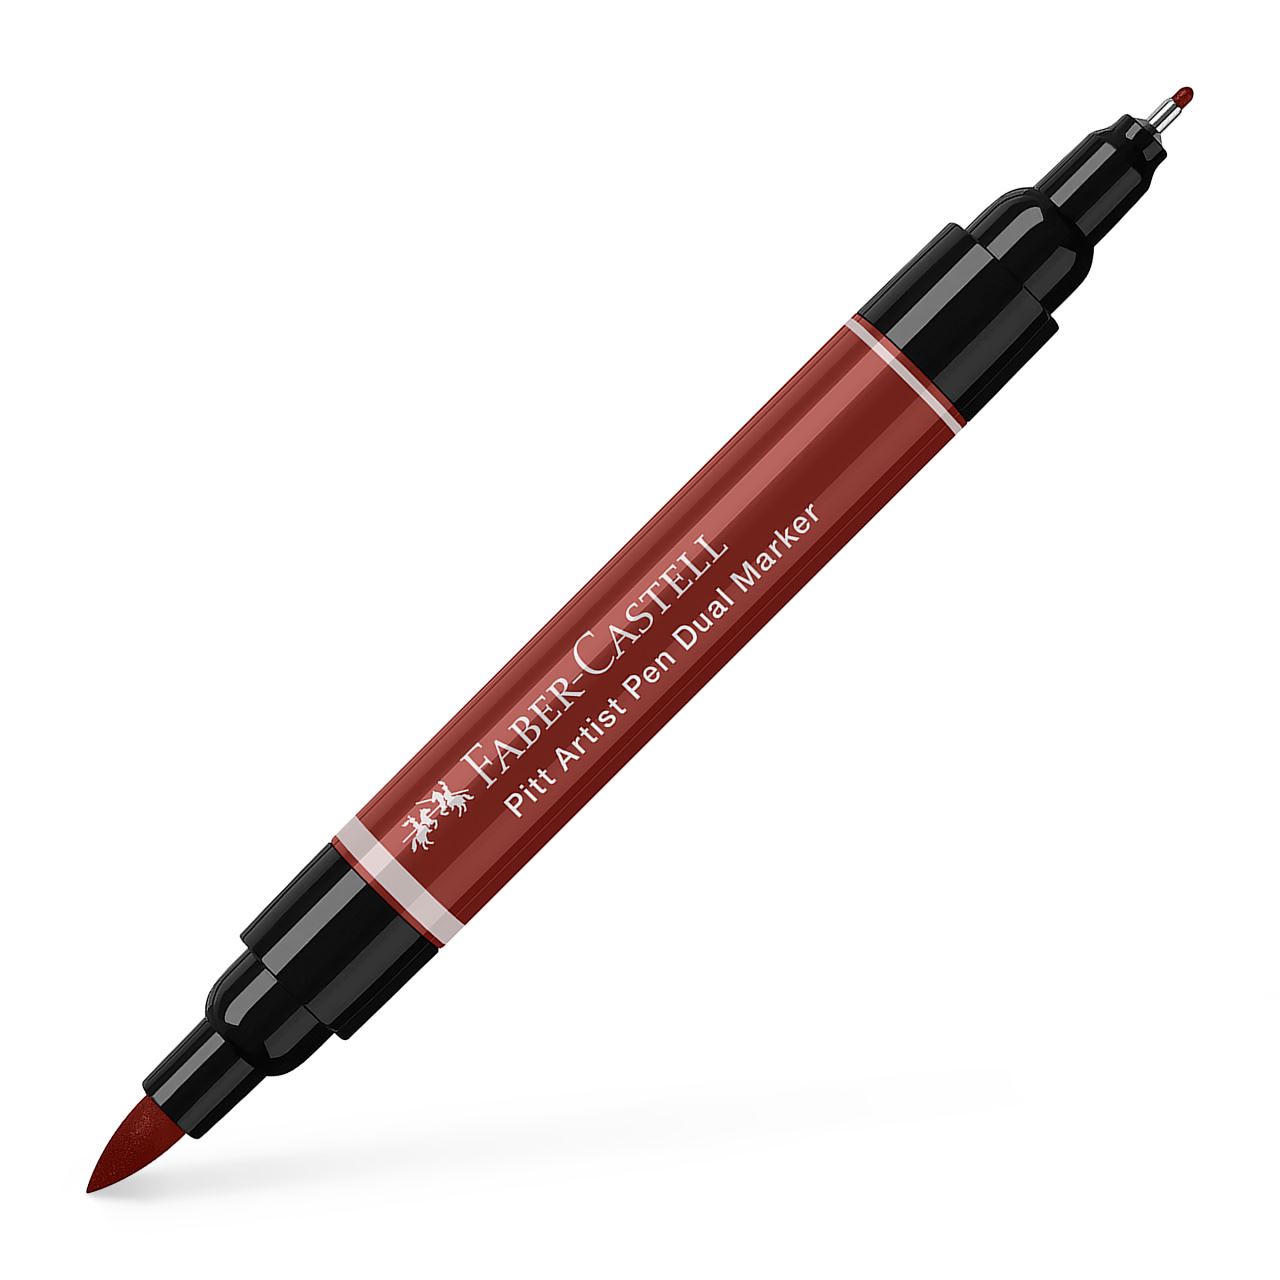 Faber-Castell - Feutre Pitt Artist Pen Double Pointe, rouge indien